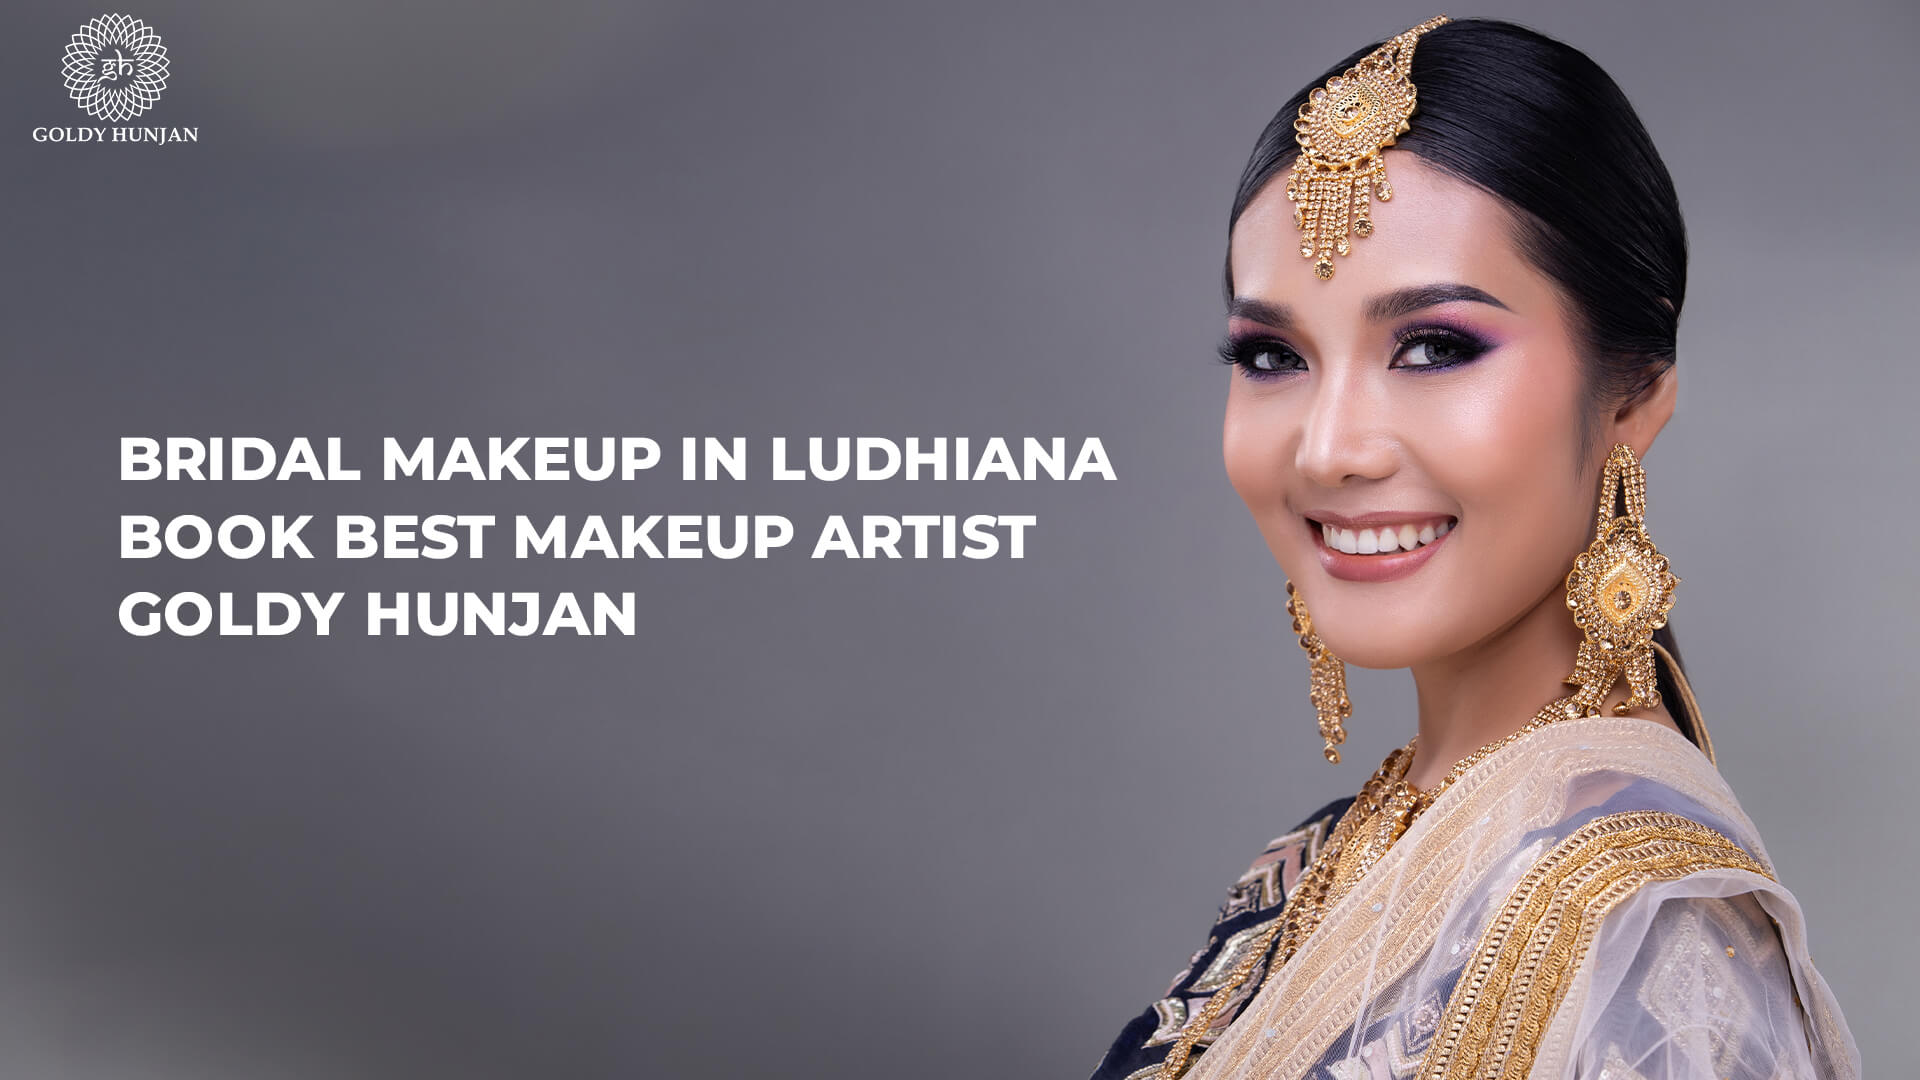 Bridal makeup in Ludhiana - Book best makeup artist Goldy Hunjan